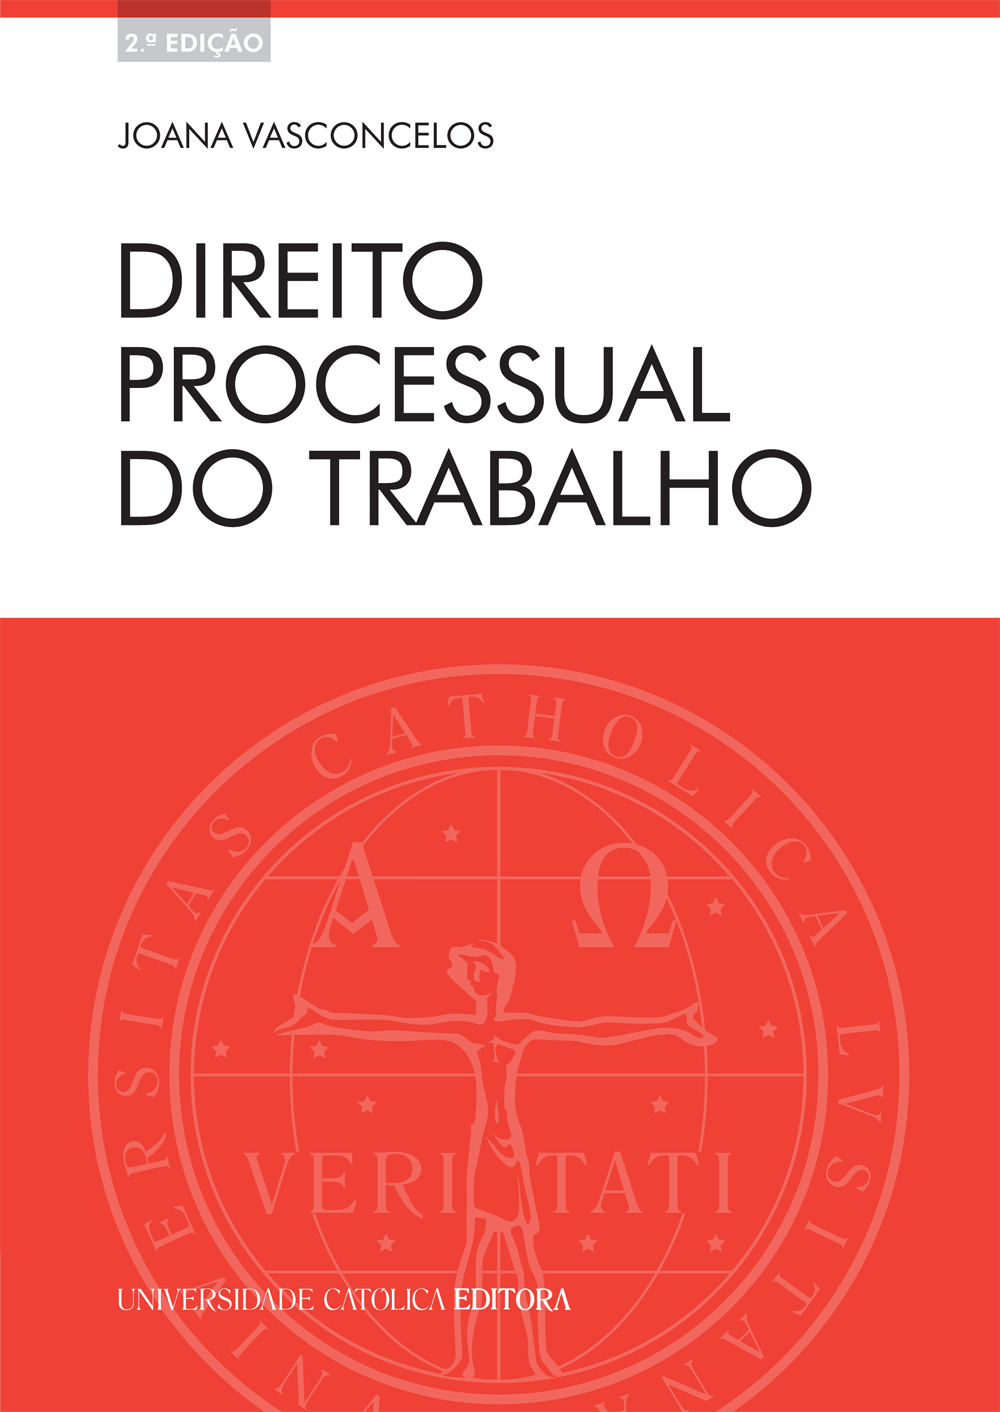 DIREITO PROCESSUAL DO TRABALHO - Universidade Católica Editora 